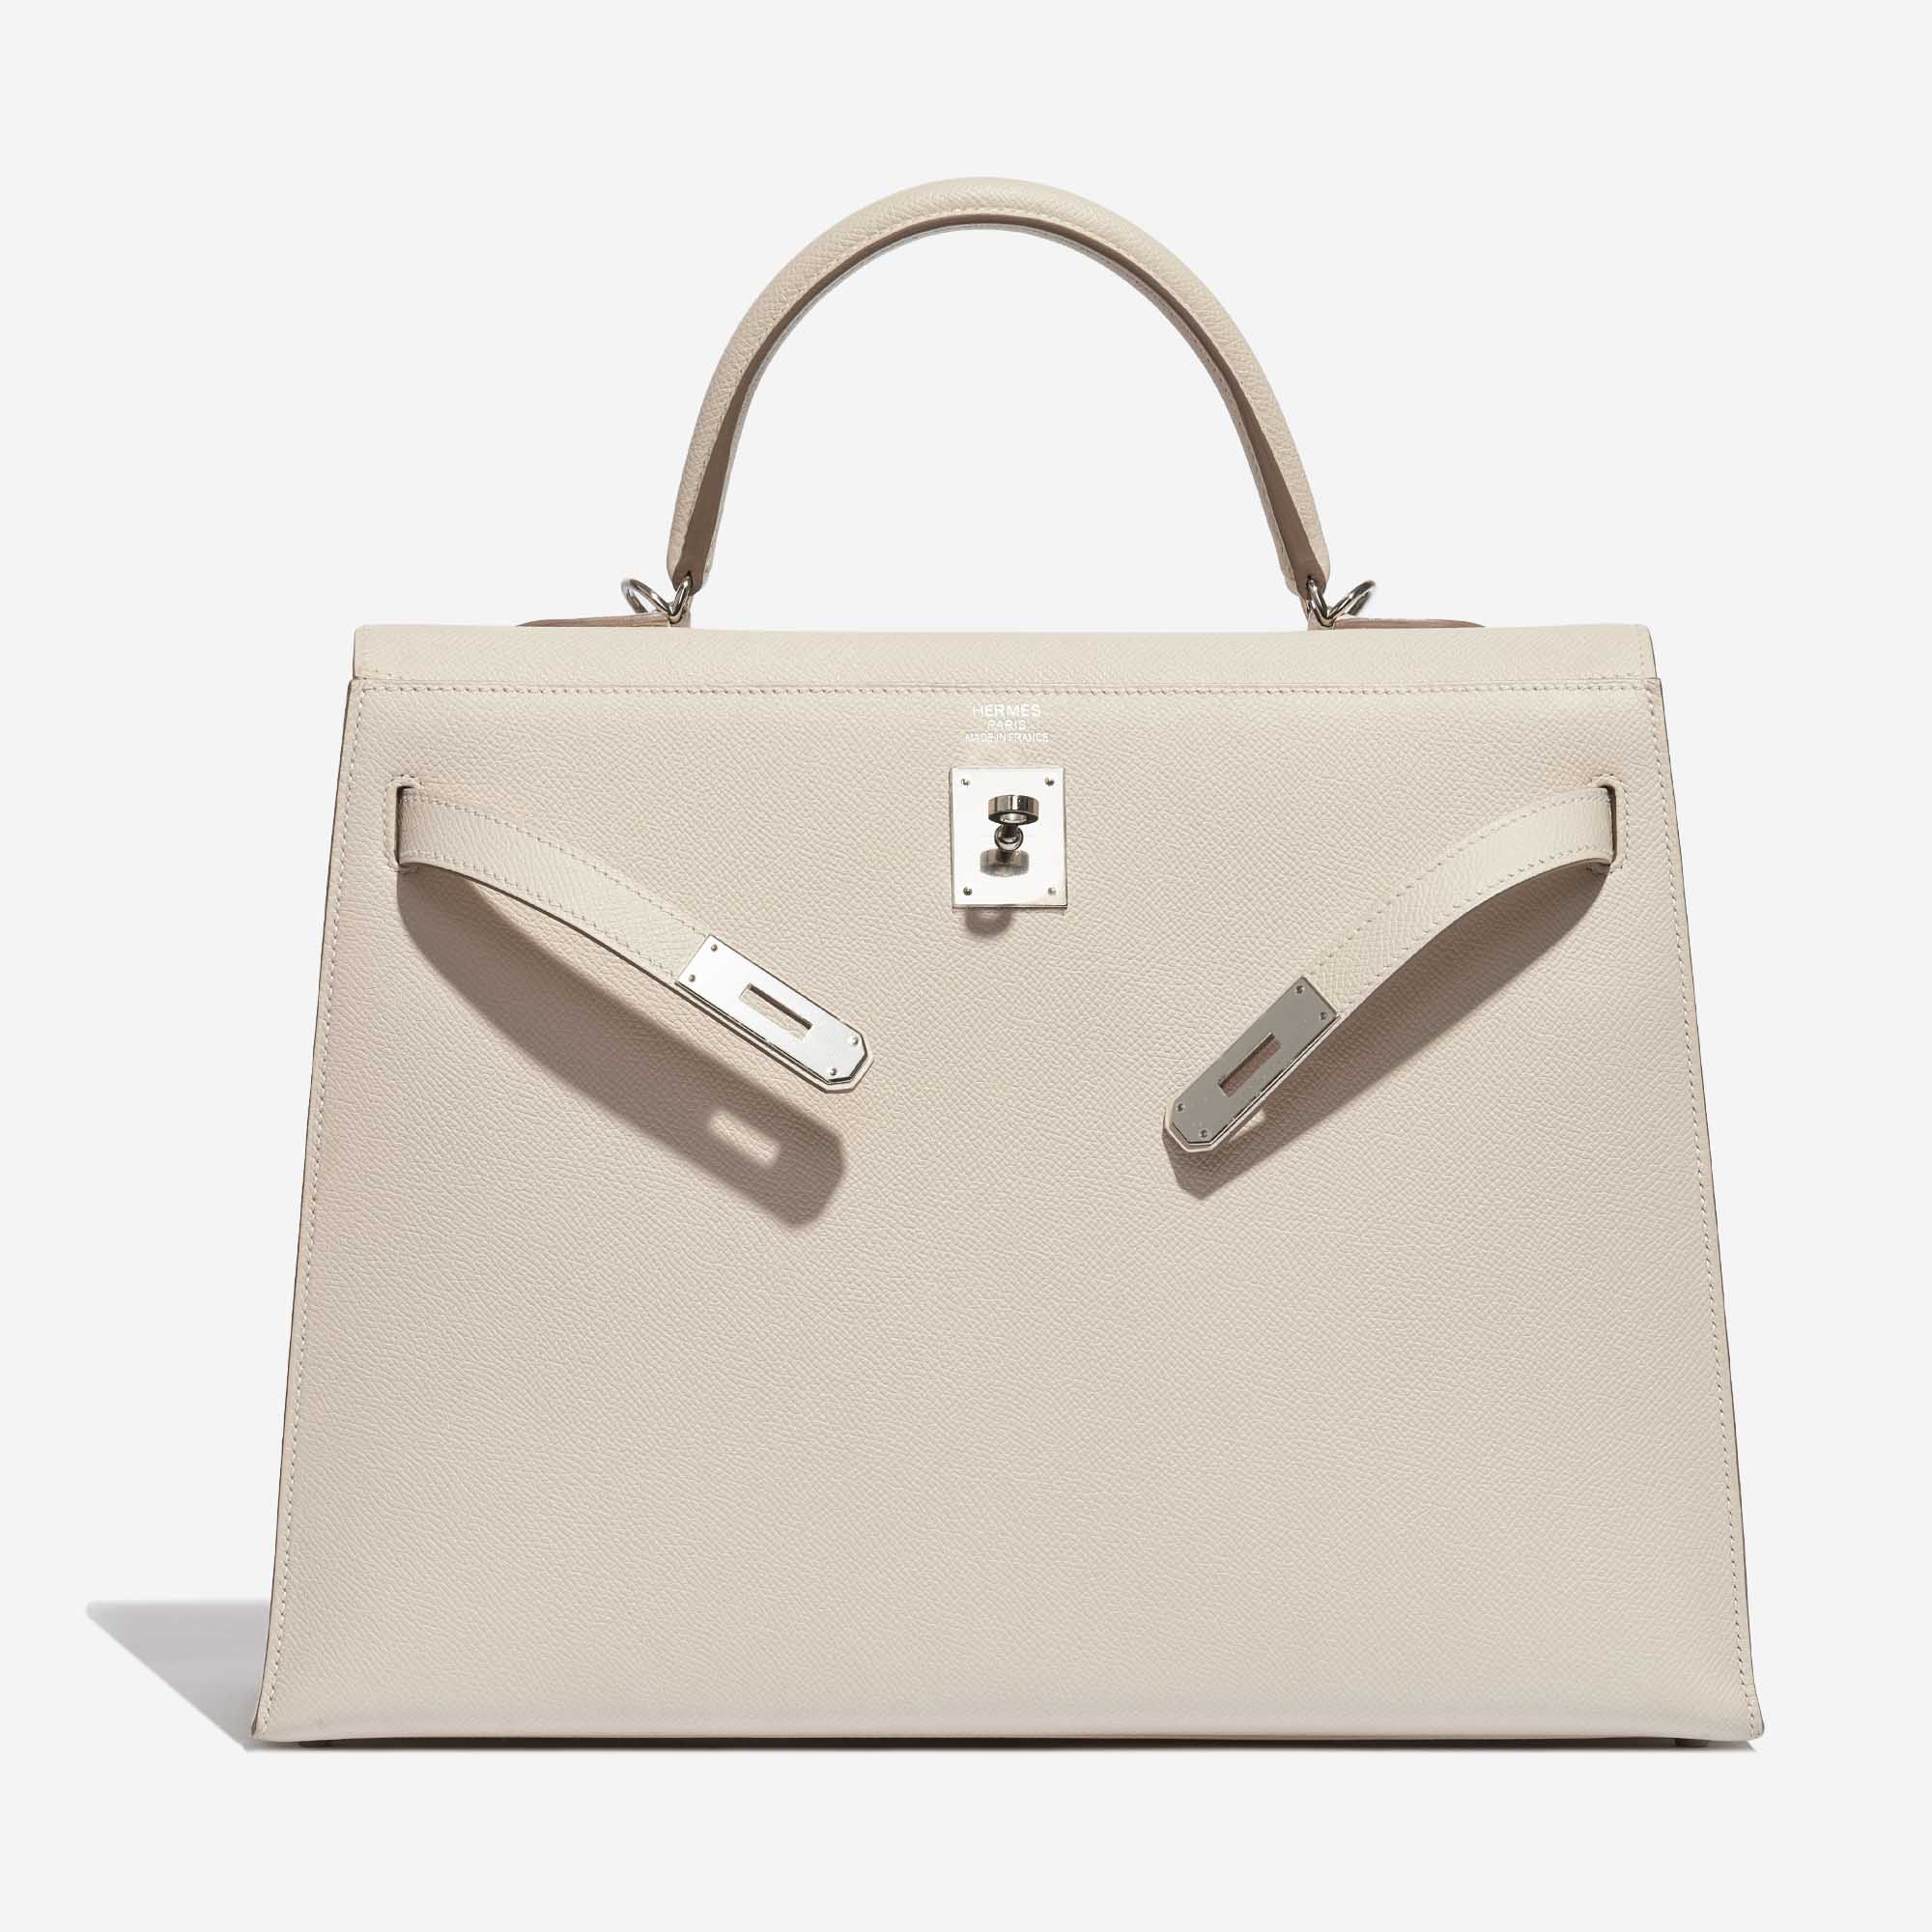 Pre-owned Hermès Tasche Kelly 35 Epsom Craie White Front Open | Verkaufen Sie Ihre Designer-Tasche auf Saclab.com